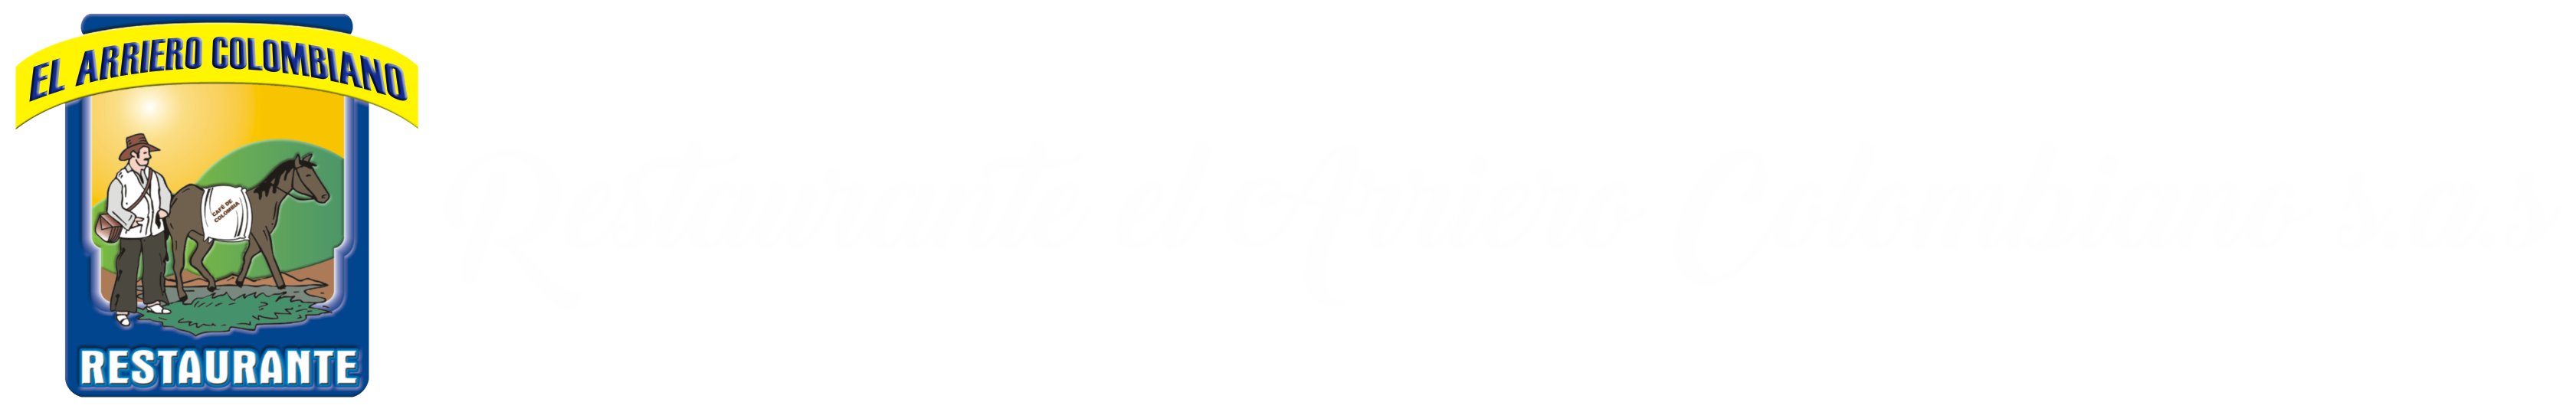 Restaurante El Arriero Colombiano